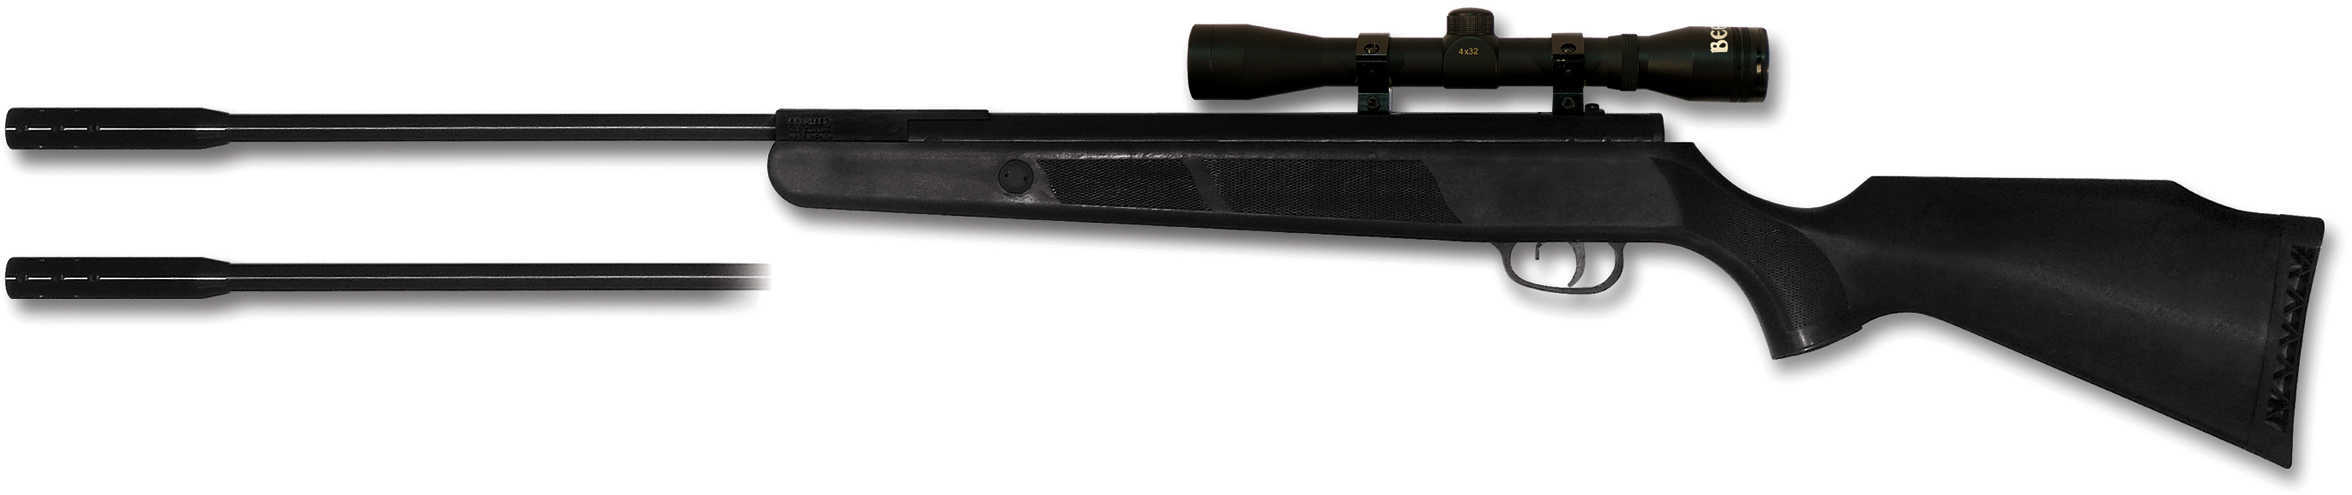 Beeman Kodiak X2 DC AW Air Rifle CMB Dual Caliber with 4x32 Scope